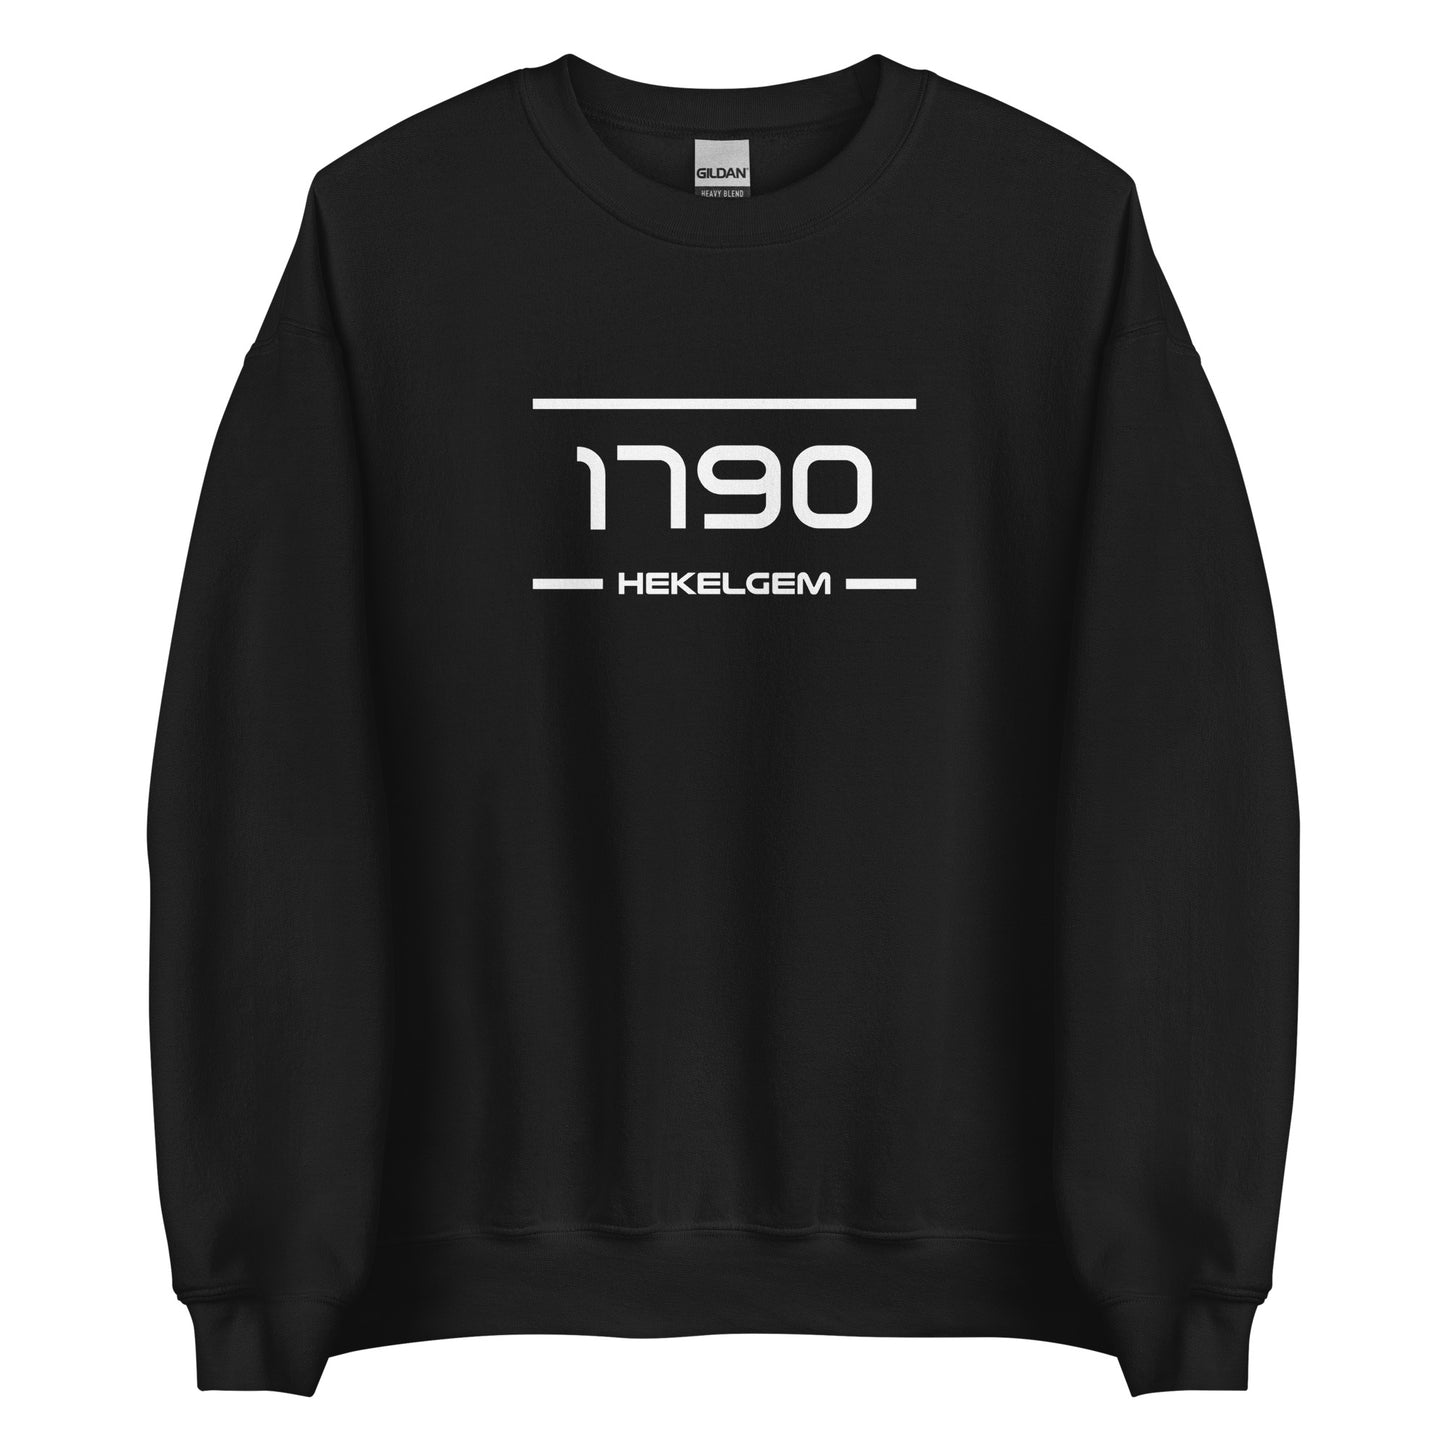 Sweater - 1790 - Hekelgem (M/V)